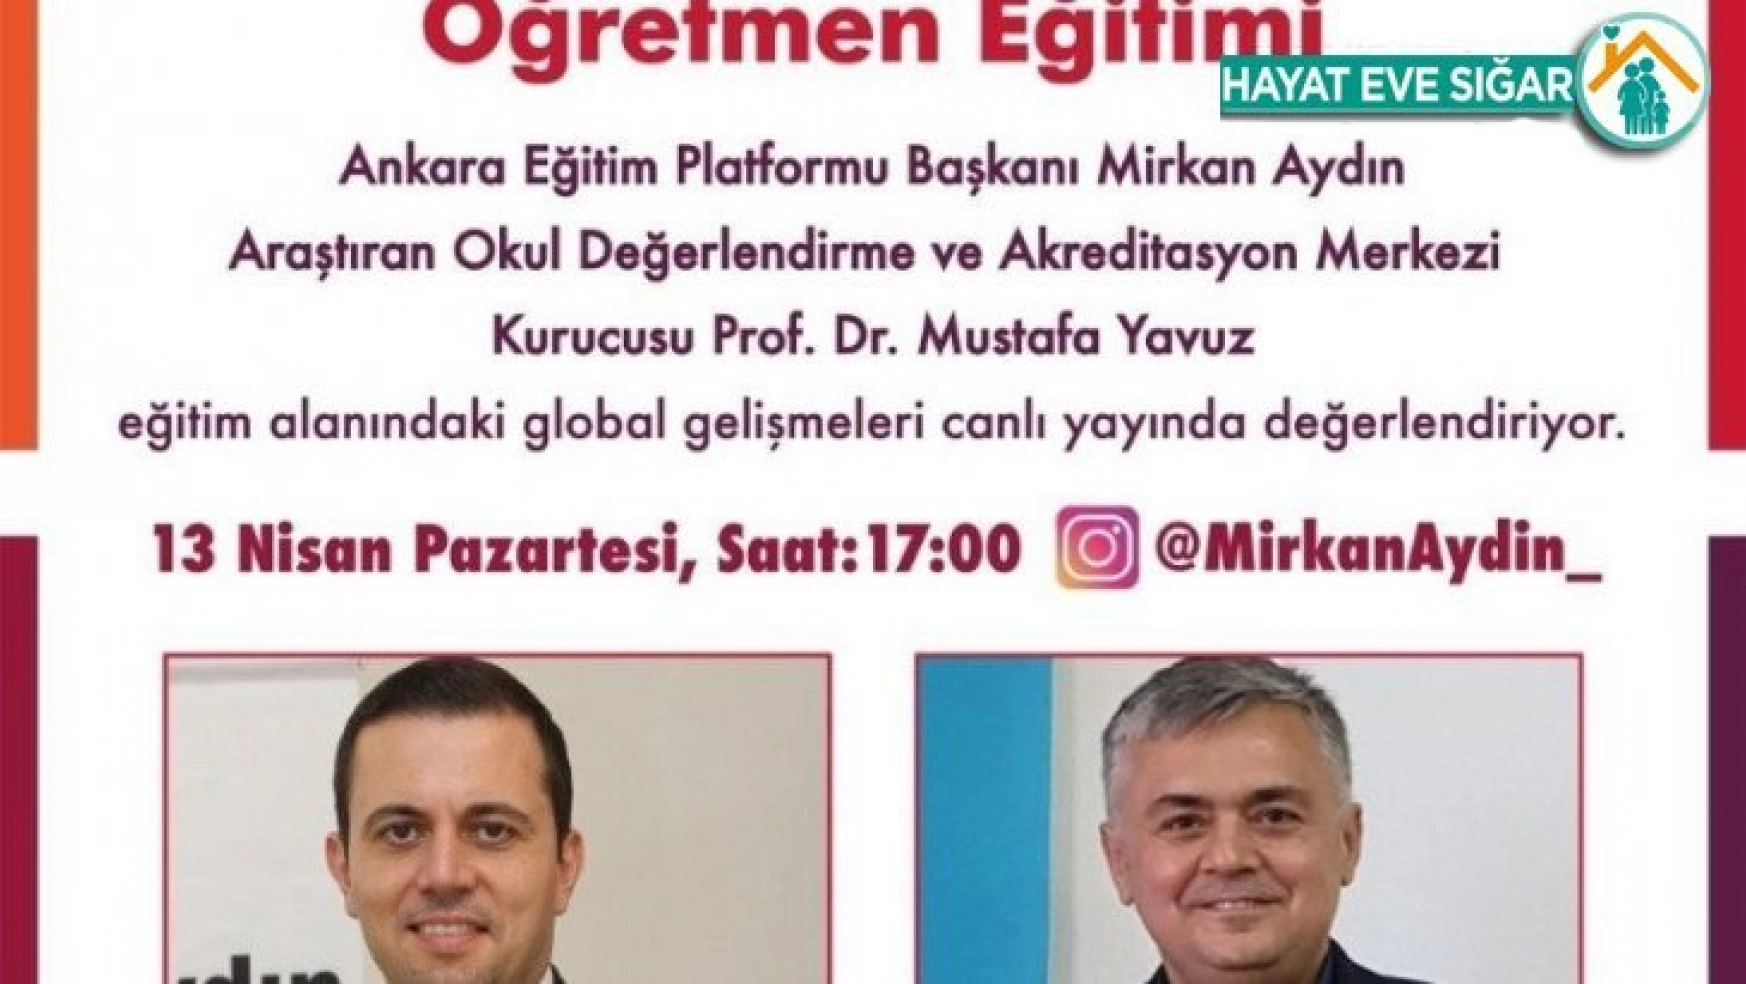 Ankara Eğitim Platformu, canlı yayınla aile ve öğretmen eğitimleri düzenleyecek